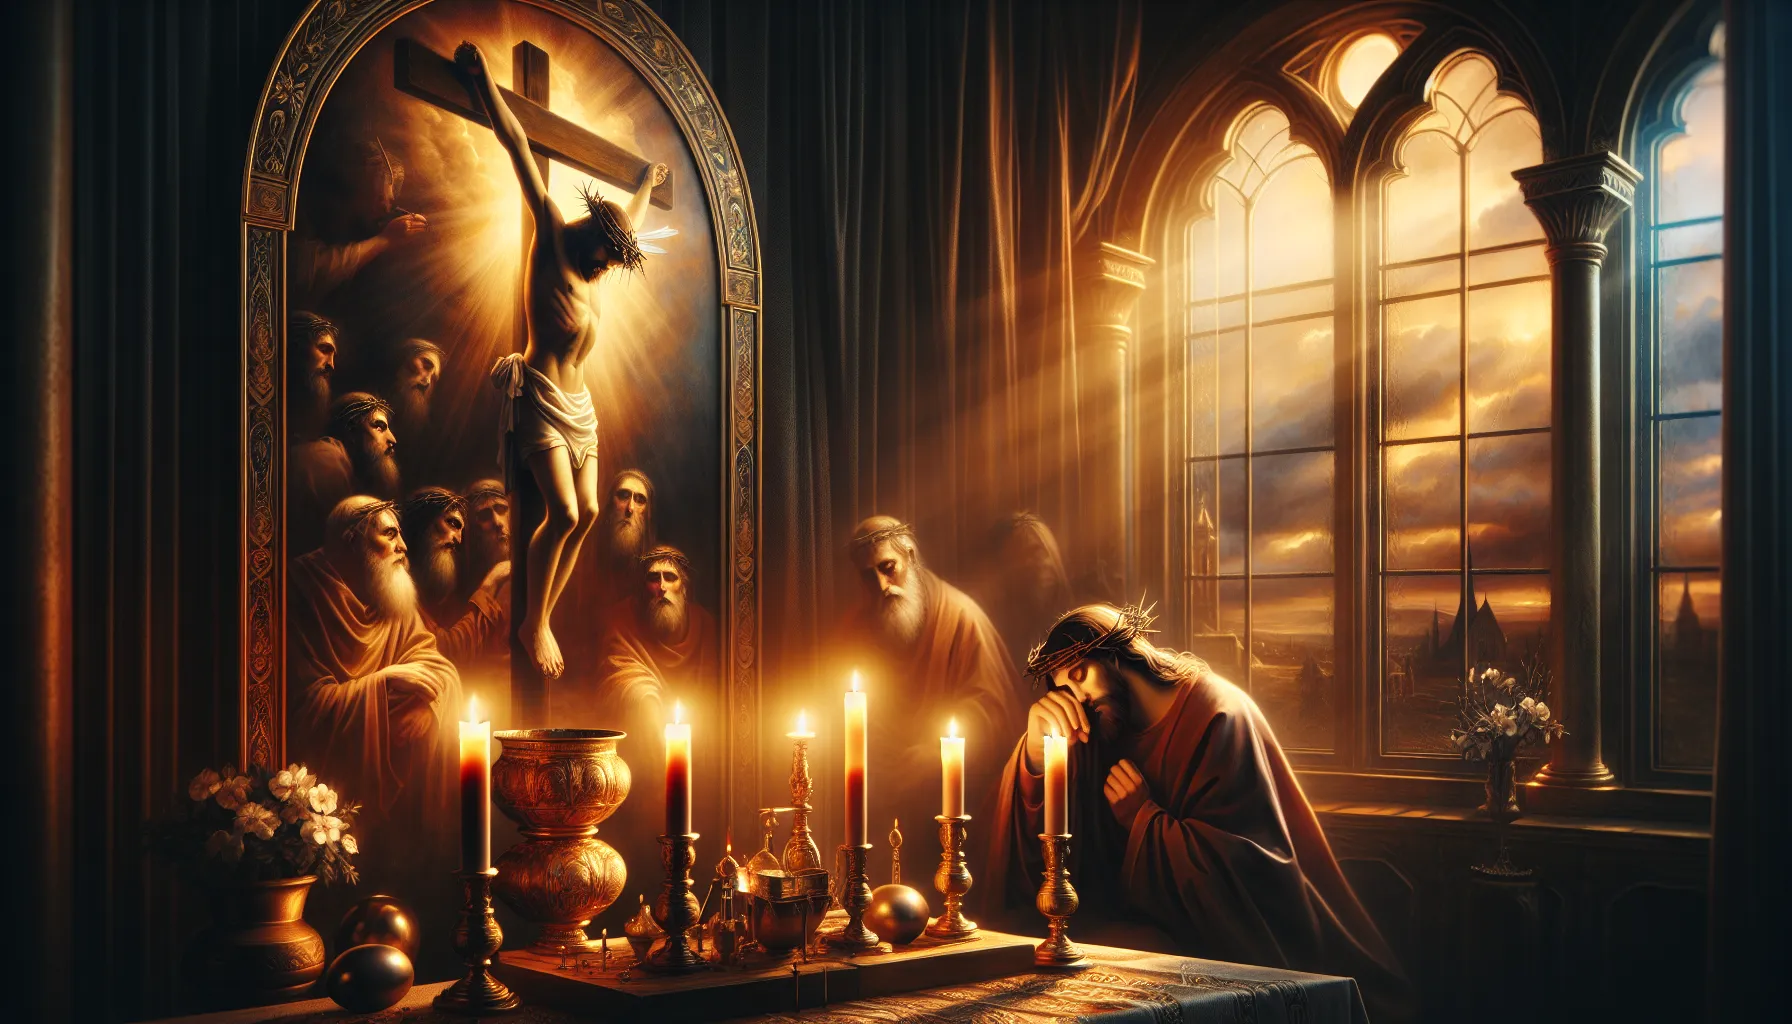 Representación artística del Sábado Santo en la tradición cristiana. Imagen de luto y reflexión en el calendario litúrgico.